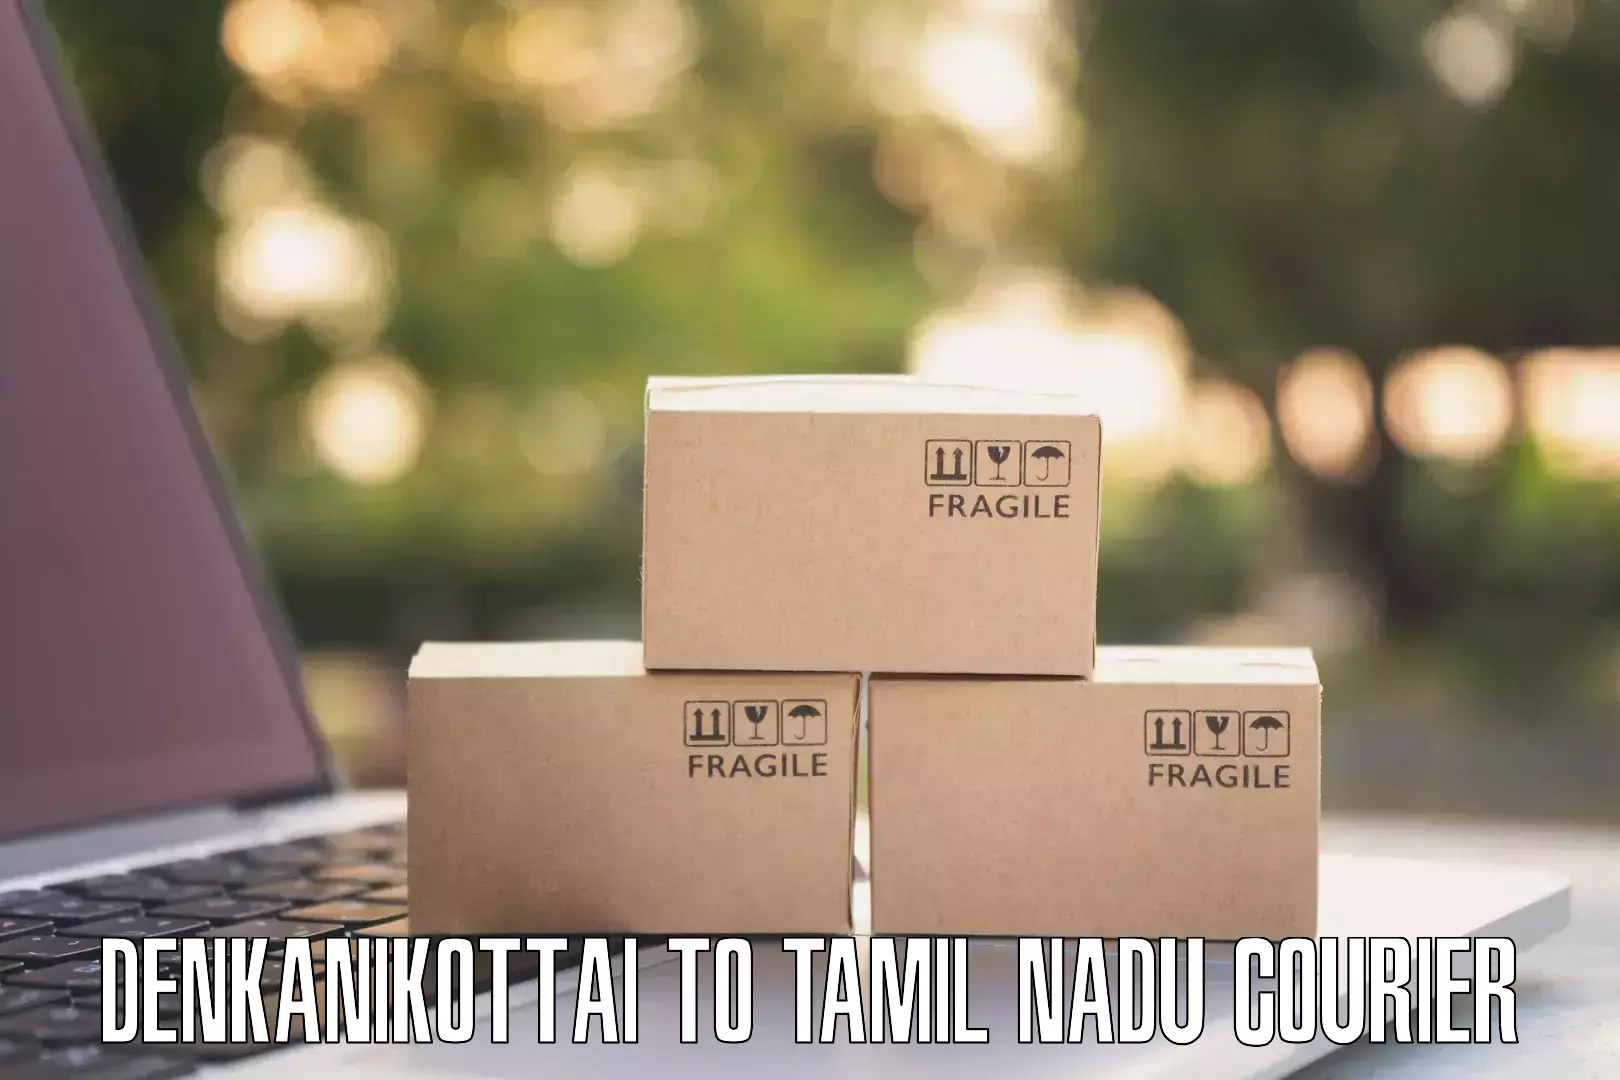 User-friendly delivery service Denkanikottai to Aranthangi